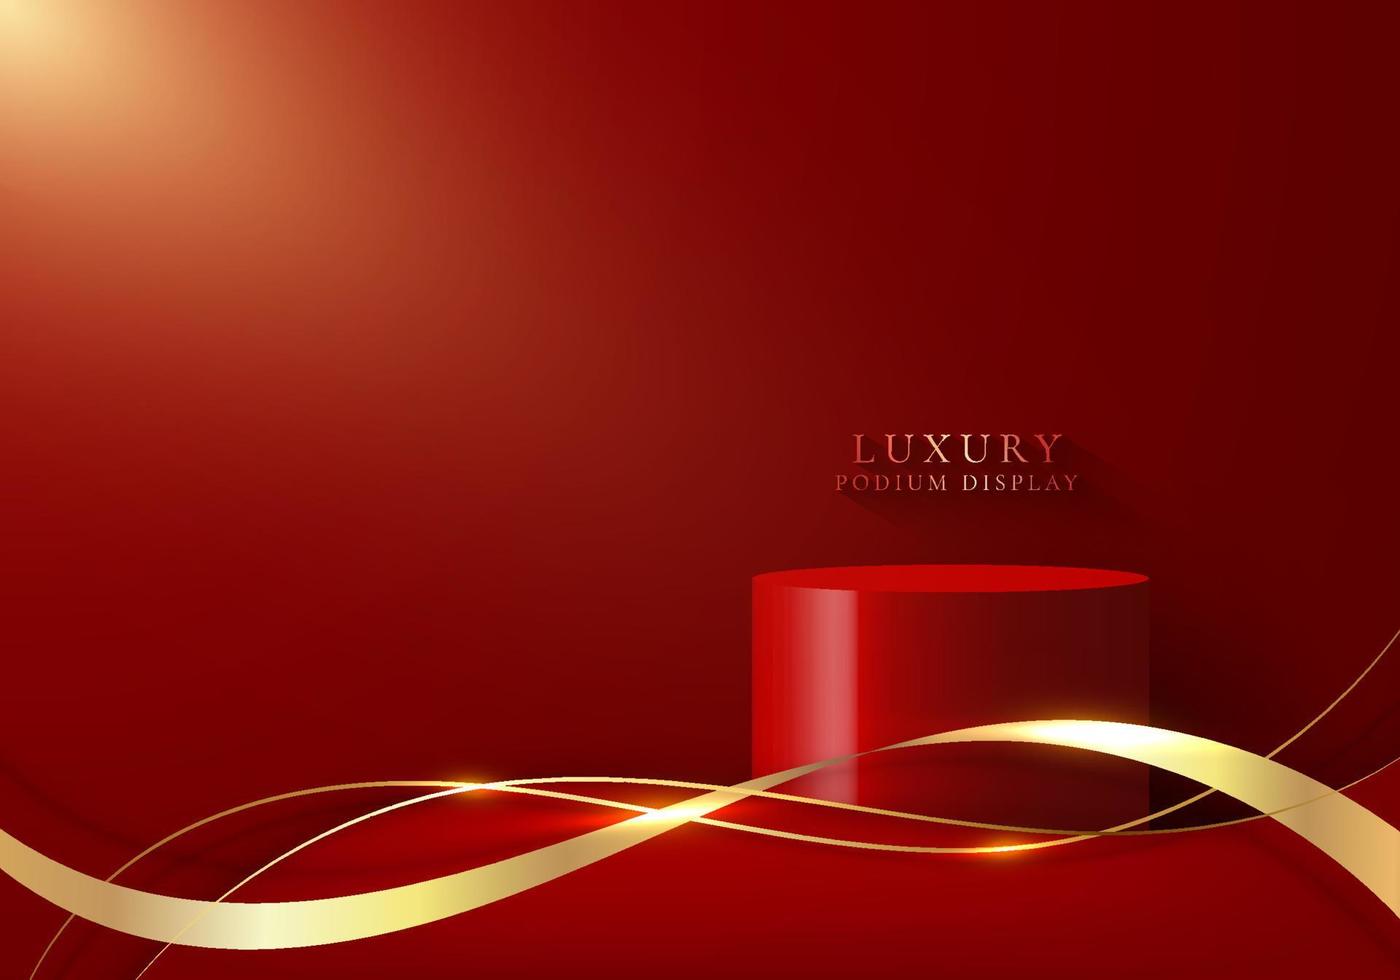 3D-realistische Luxus-Podiumsplattformen in Rot mit goldenem Band und Wellenlinie auf rotem Hintergrund vektor